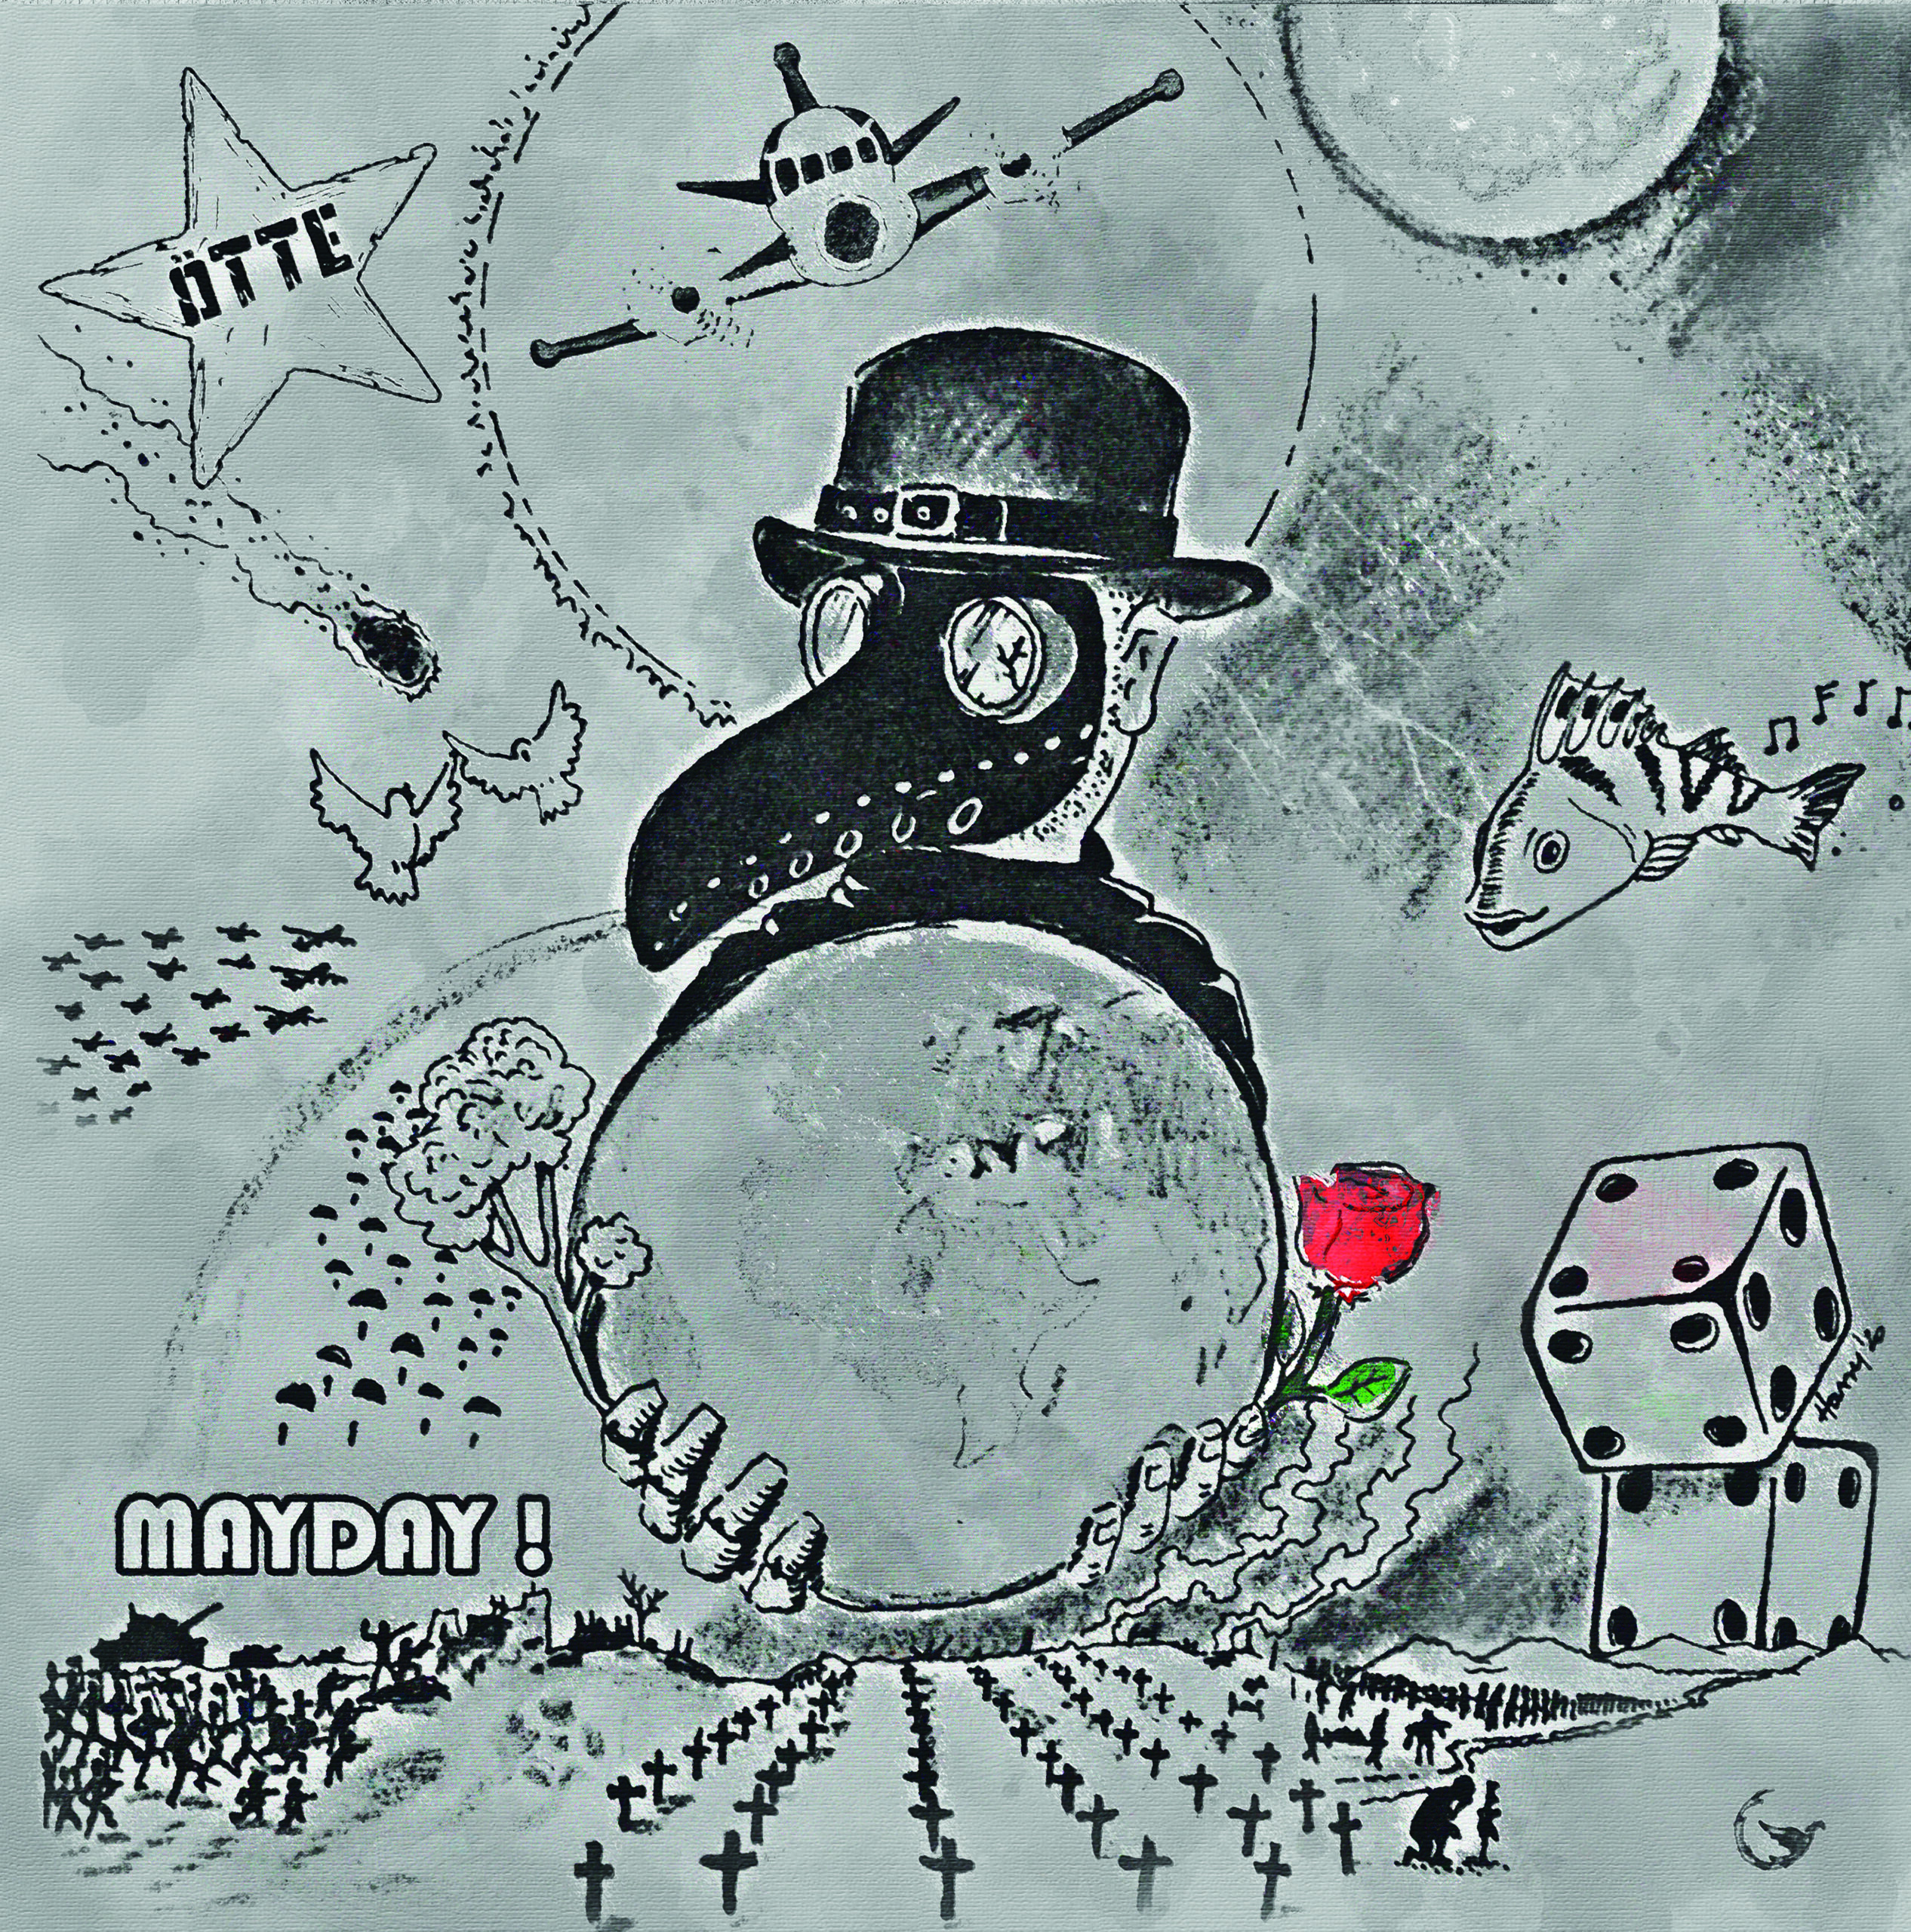 Ötte (D) – Mayday